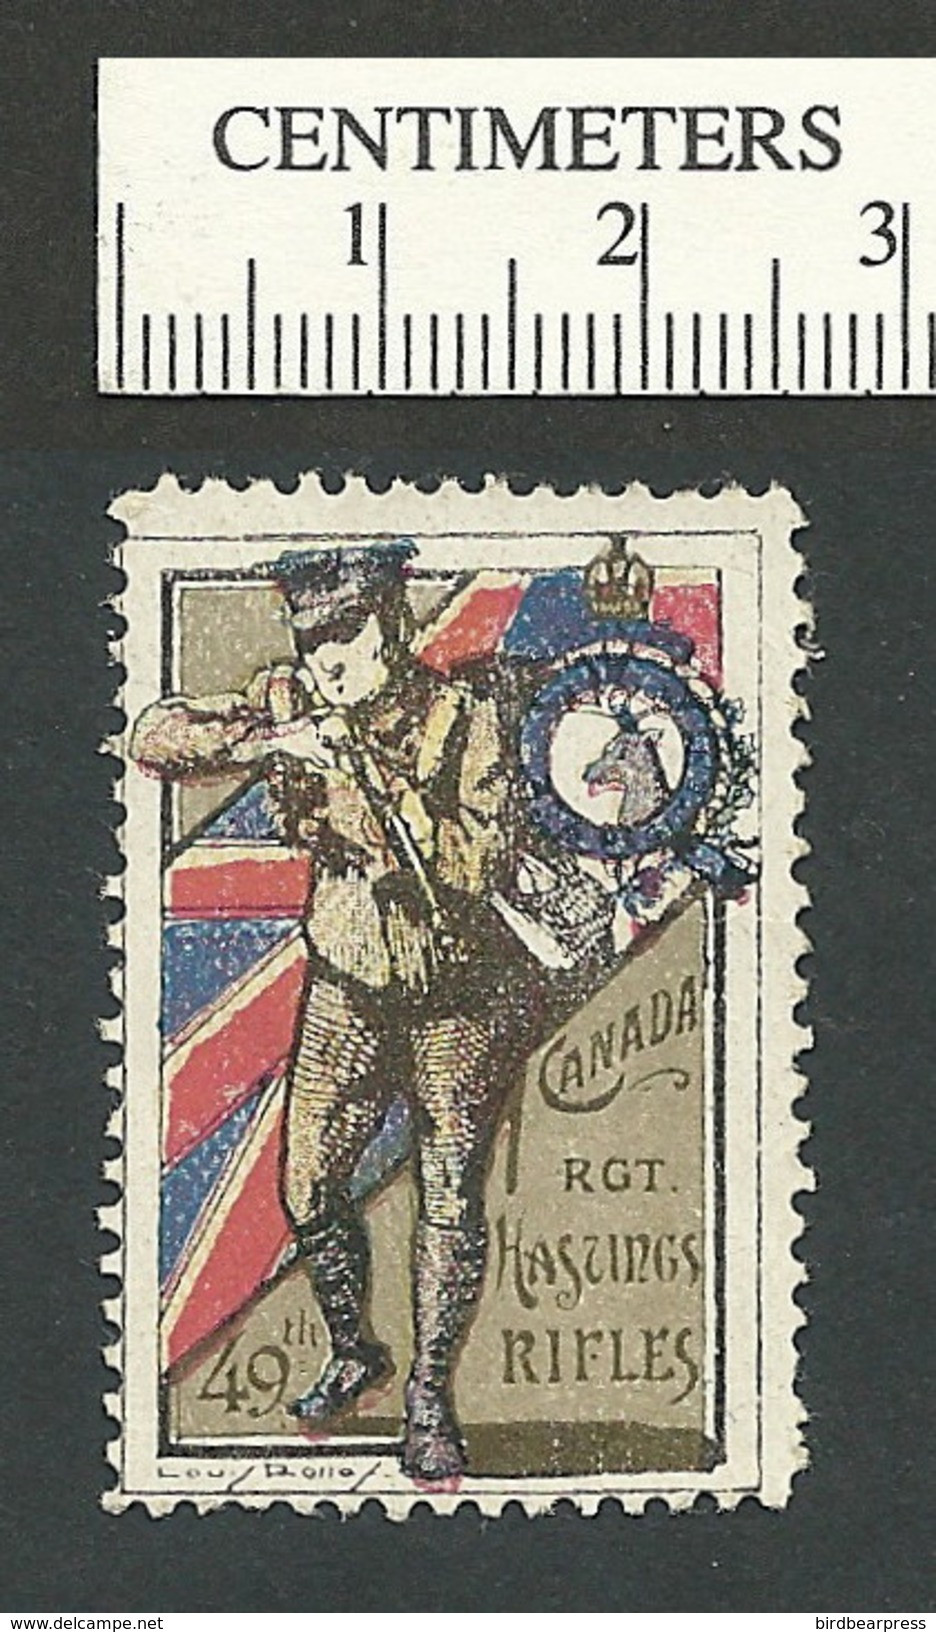 B46-45 CANADA WWI Delandre Hastings Rifles Stamp MNH Crease - Vignette Locali E Private